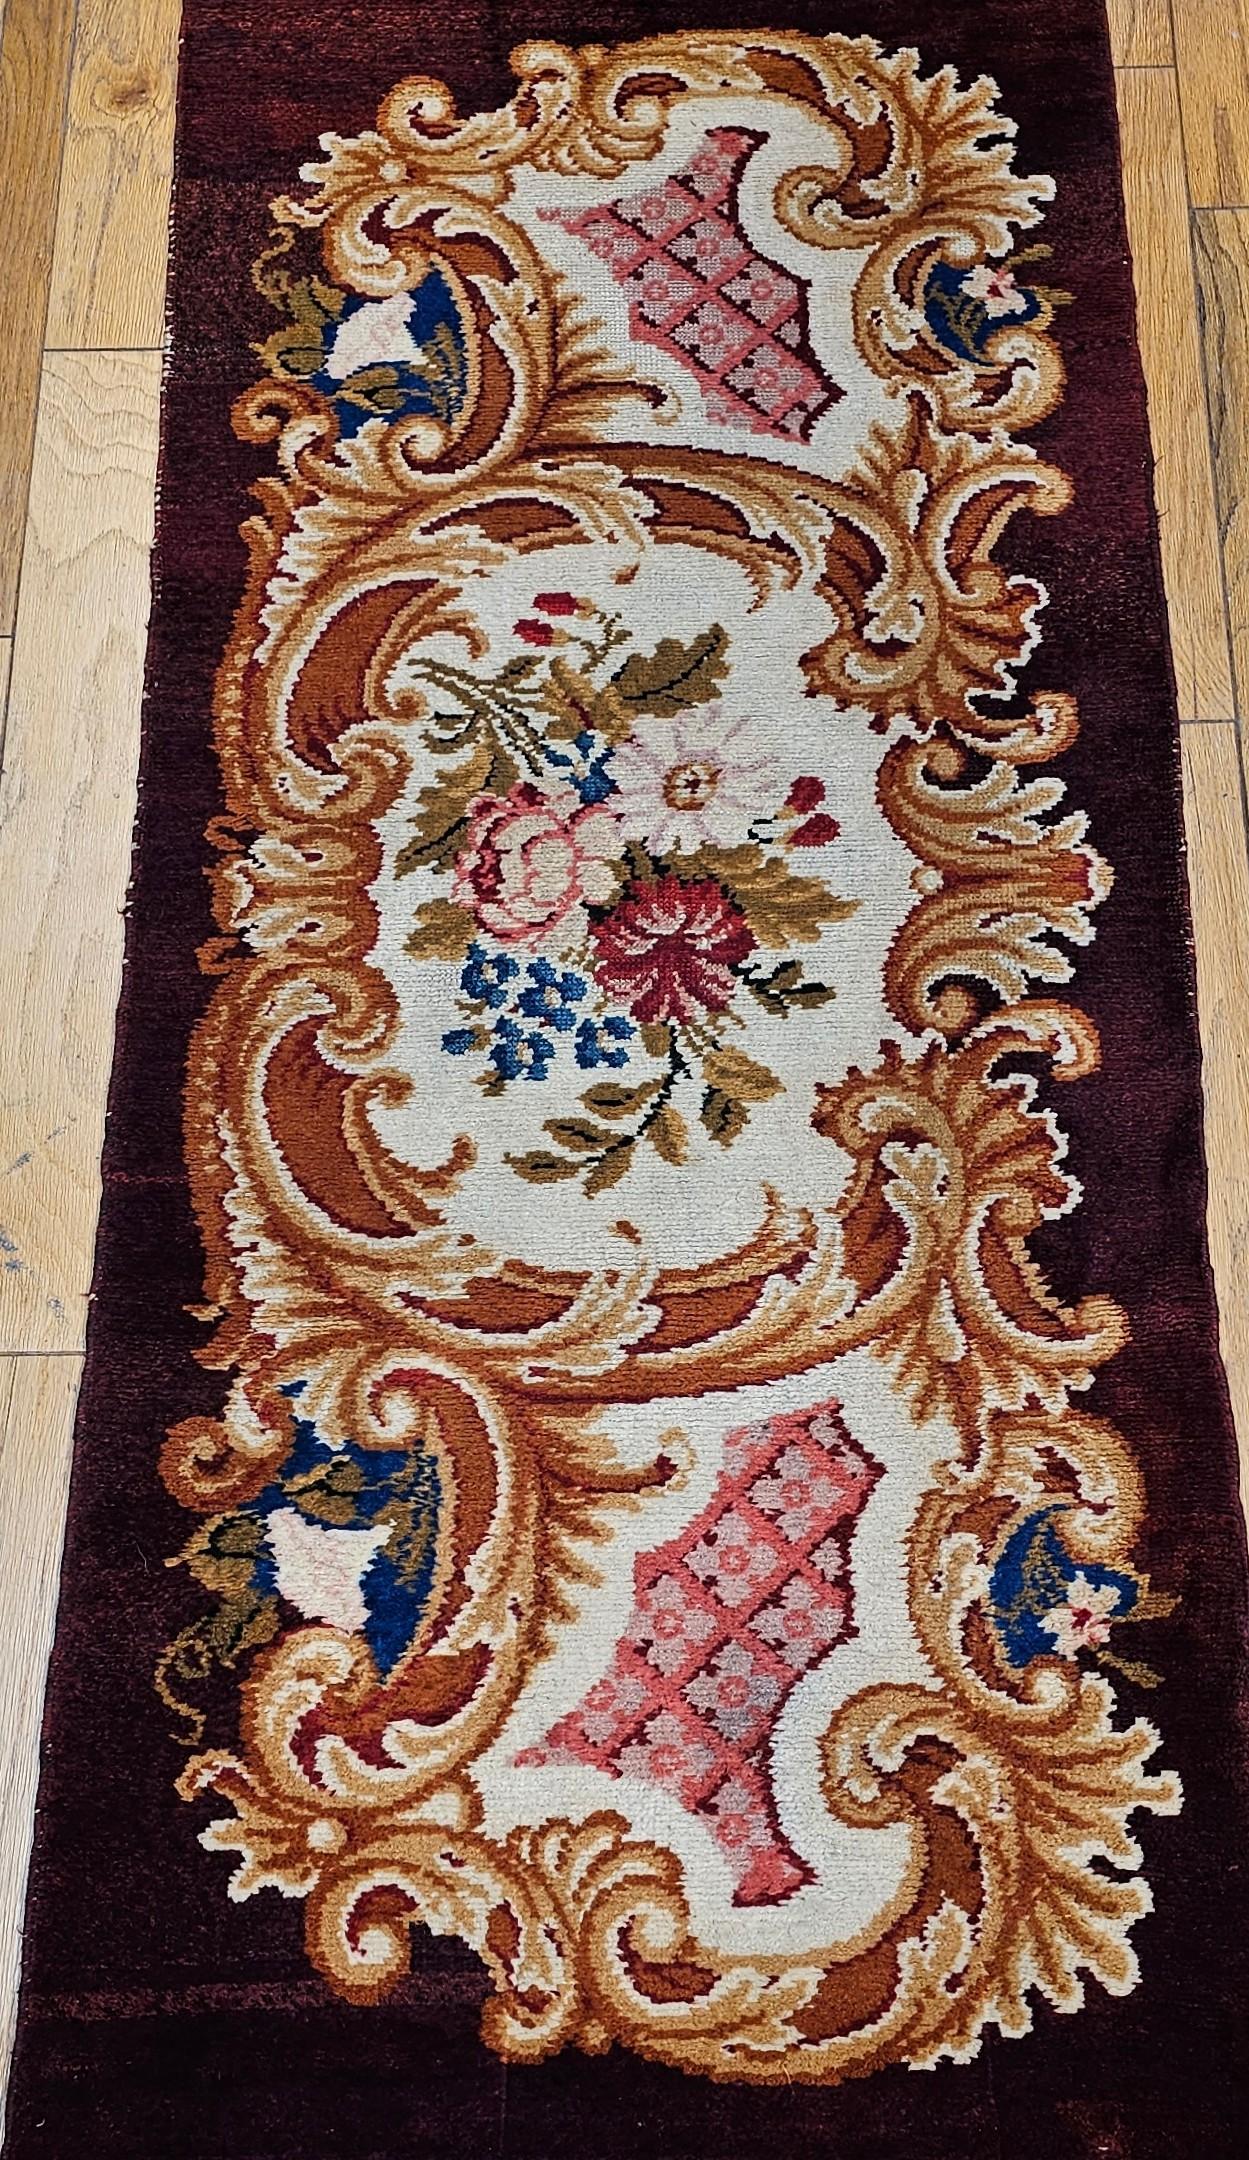 Tapis vintage de la Savonnerie, noué à la main, datant du début des années 1900.  Le tapis Savonnerie présente un motif floral classique sur un riche fond brun chocolat, avec de merveilleuses couleurs de design en rouge, rose, bleu et ivoire.  Ce